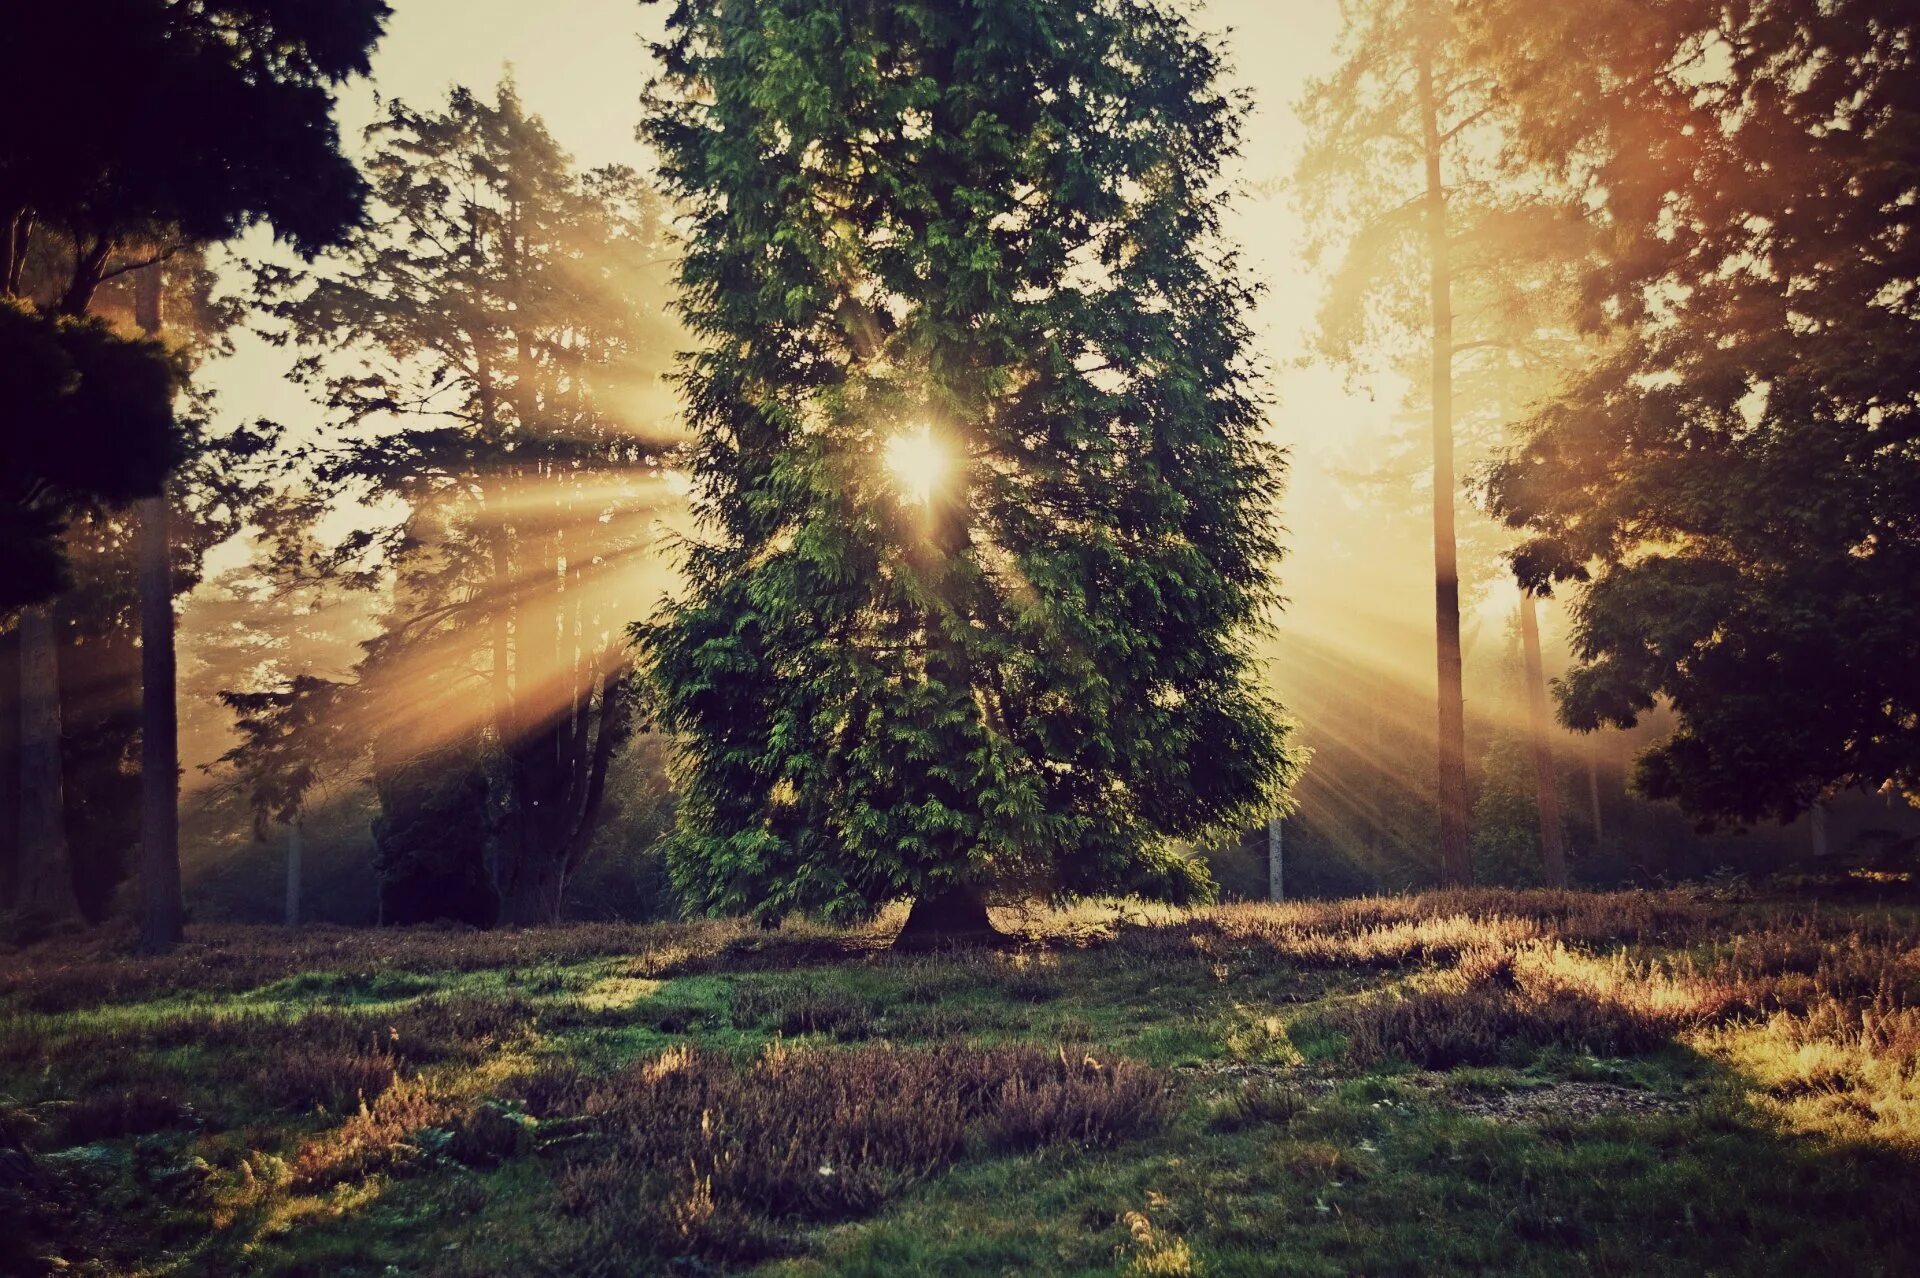 Миша сквозь листву глядит на старинный сад. Природа солнце. Лучи солнца. Дерево в лучах солнца. "Солнце в лесу".